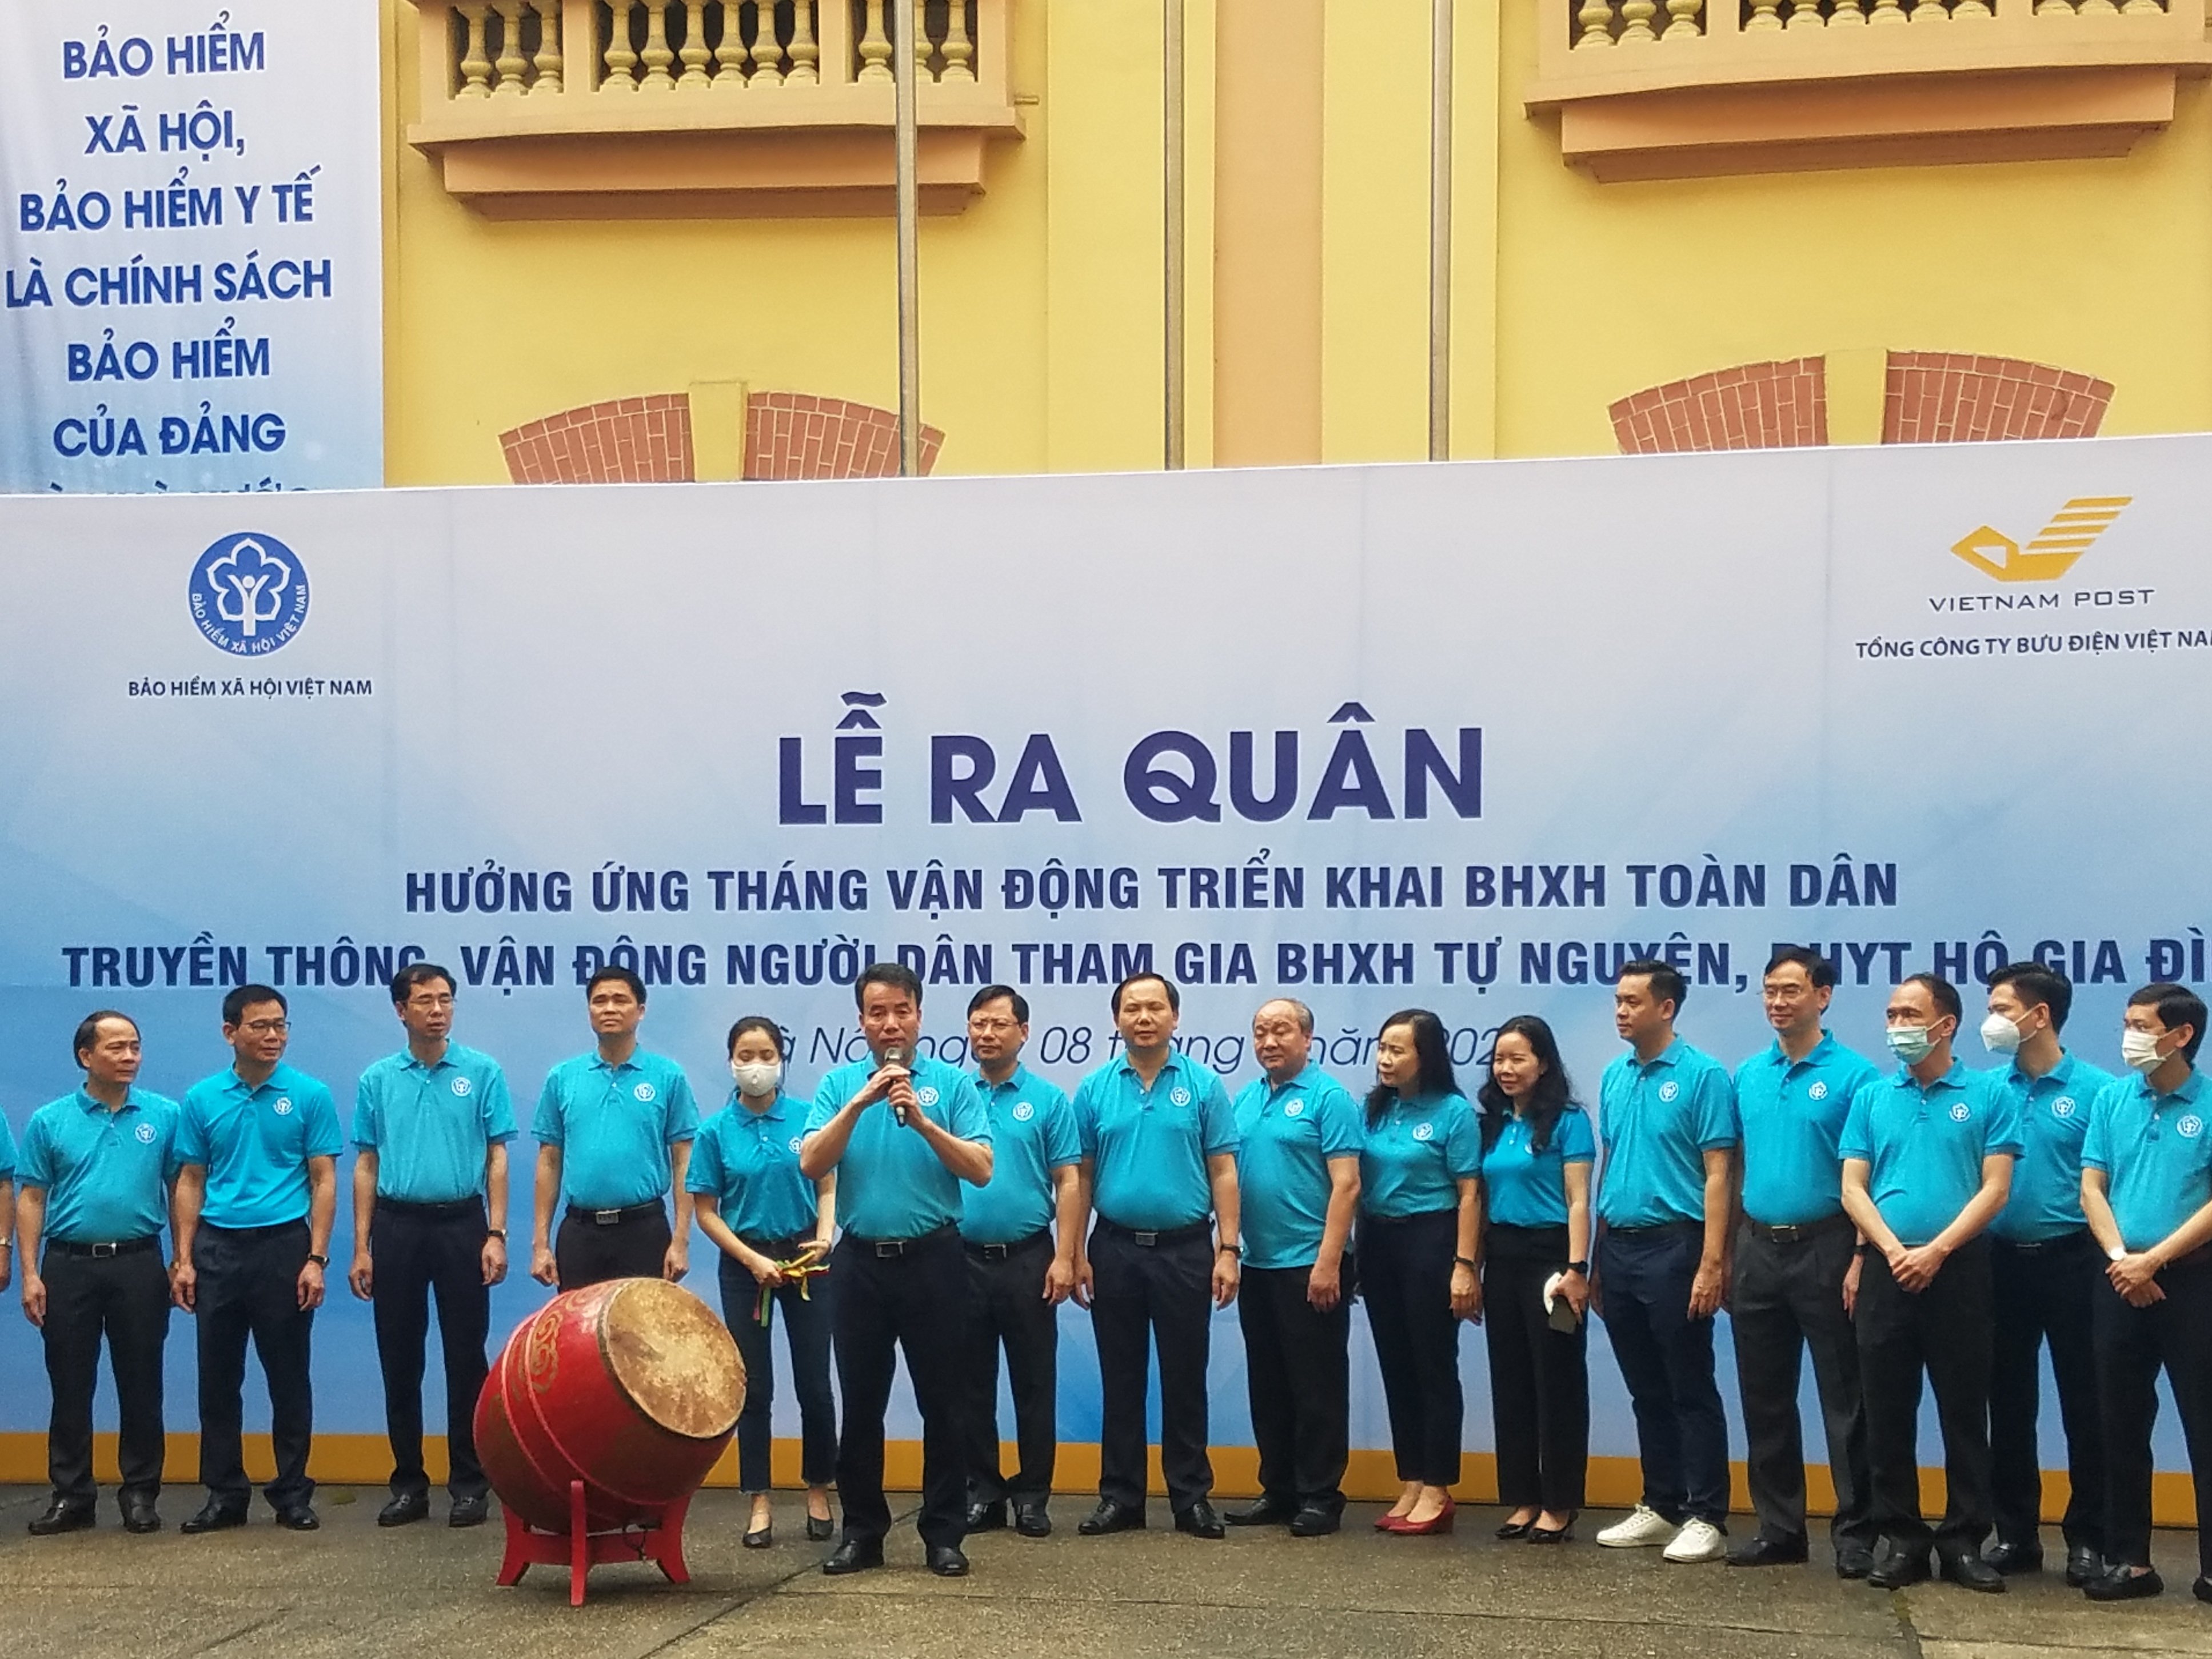 Đây là lần thứ ba BHXH Việt Nam phối hợp với Bưu điện Việt Nam tổ chức Lễ ra quân truyền thông phát triển người tham gia BHXH tự nguyện, BHYT hộ gia đình trên phạm vi toàn quốc.